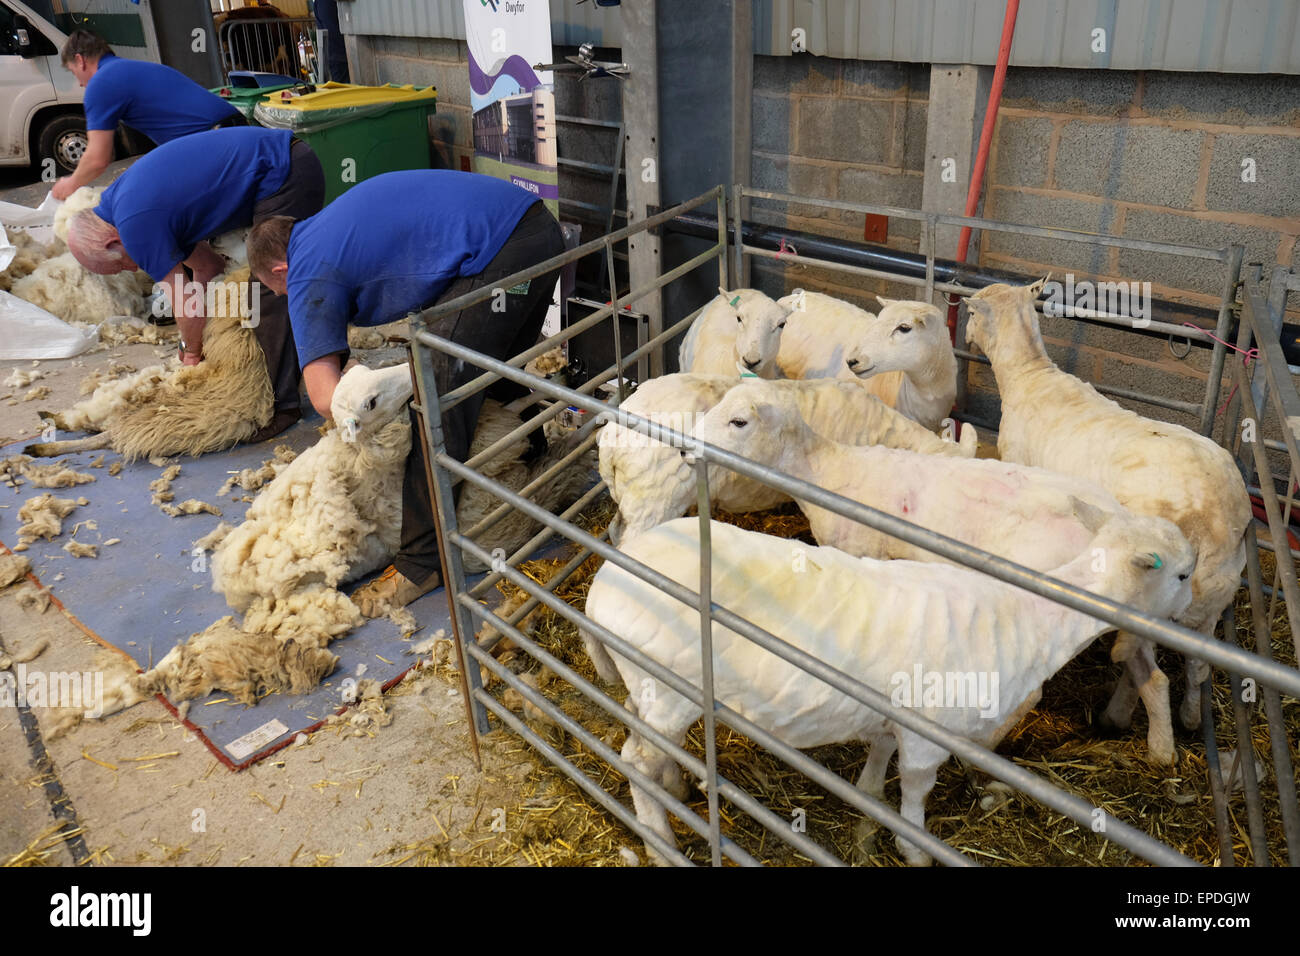 Royal Welsh Festival di Primavera di Builth Wells, Wales, Regno Unito, maggio 2015. Appena tagliata di tosatura pecore un aspetto fresco e pulito dopo essere stato tagliato a mano durante una dimostrazione di taglio durante il secondo giorno del Royal Welsh Festival di Primavera in Galles centrale. Foto Stock